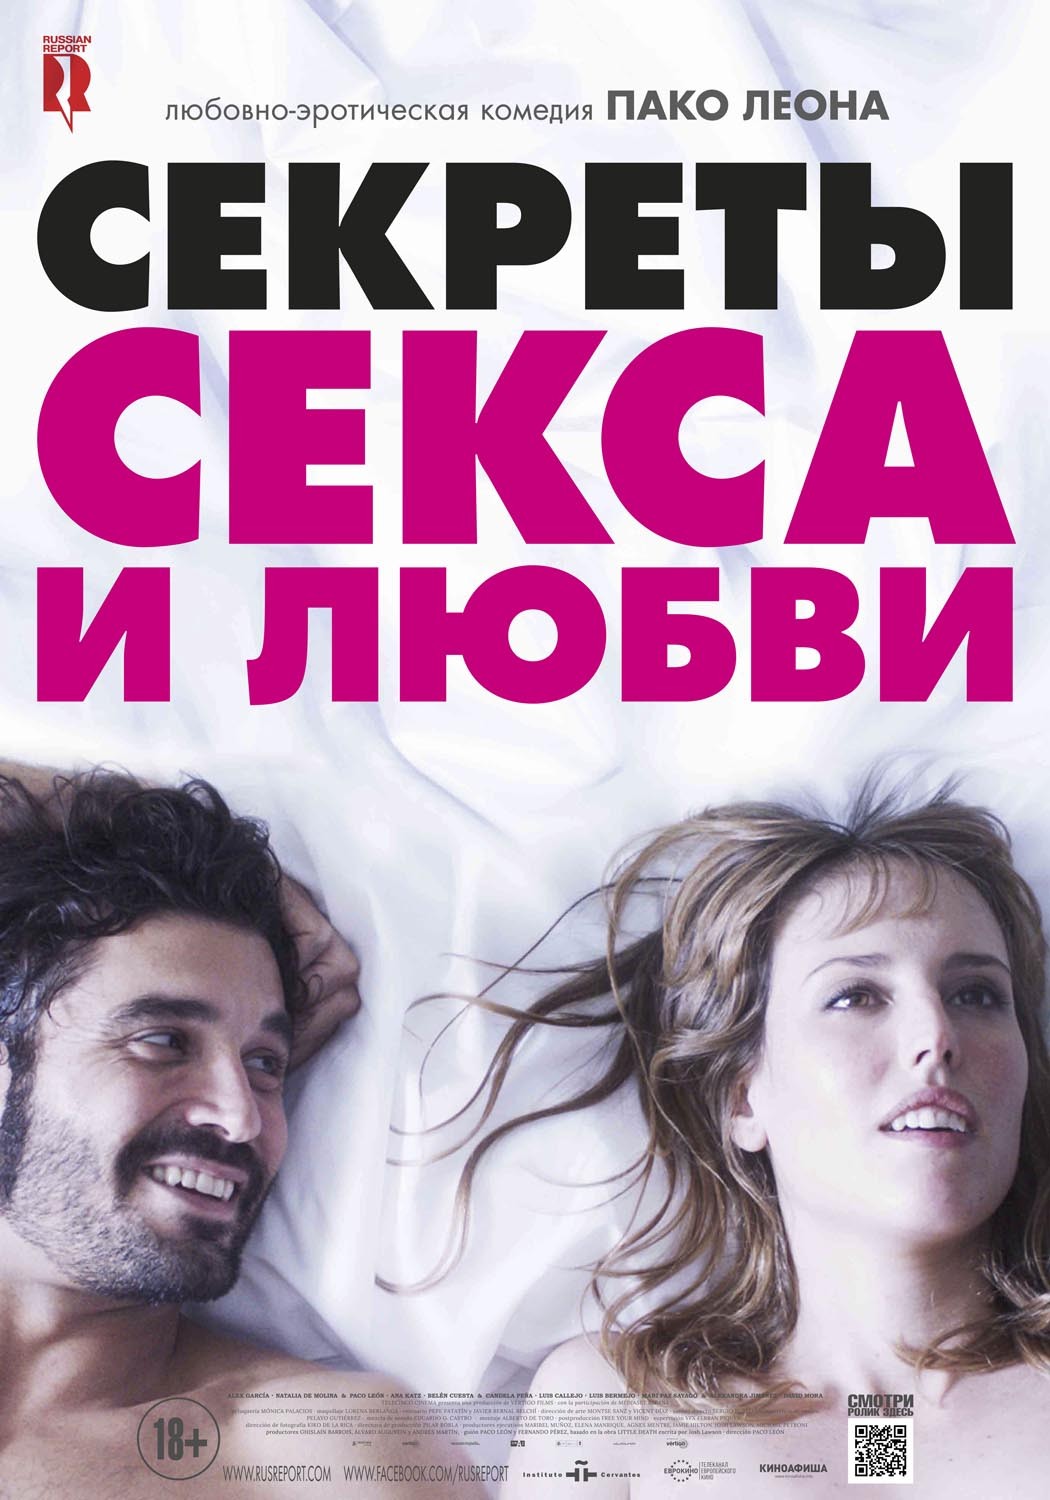 Секреты секса и любви: постер N127455